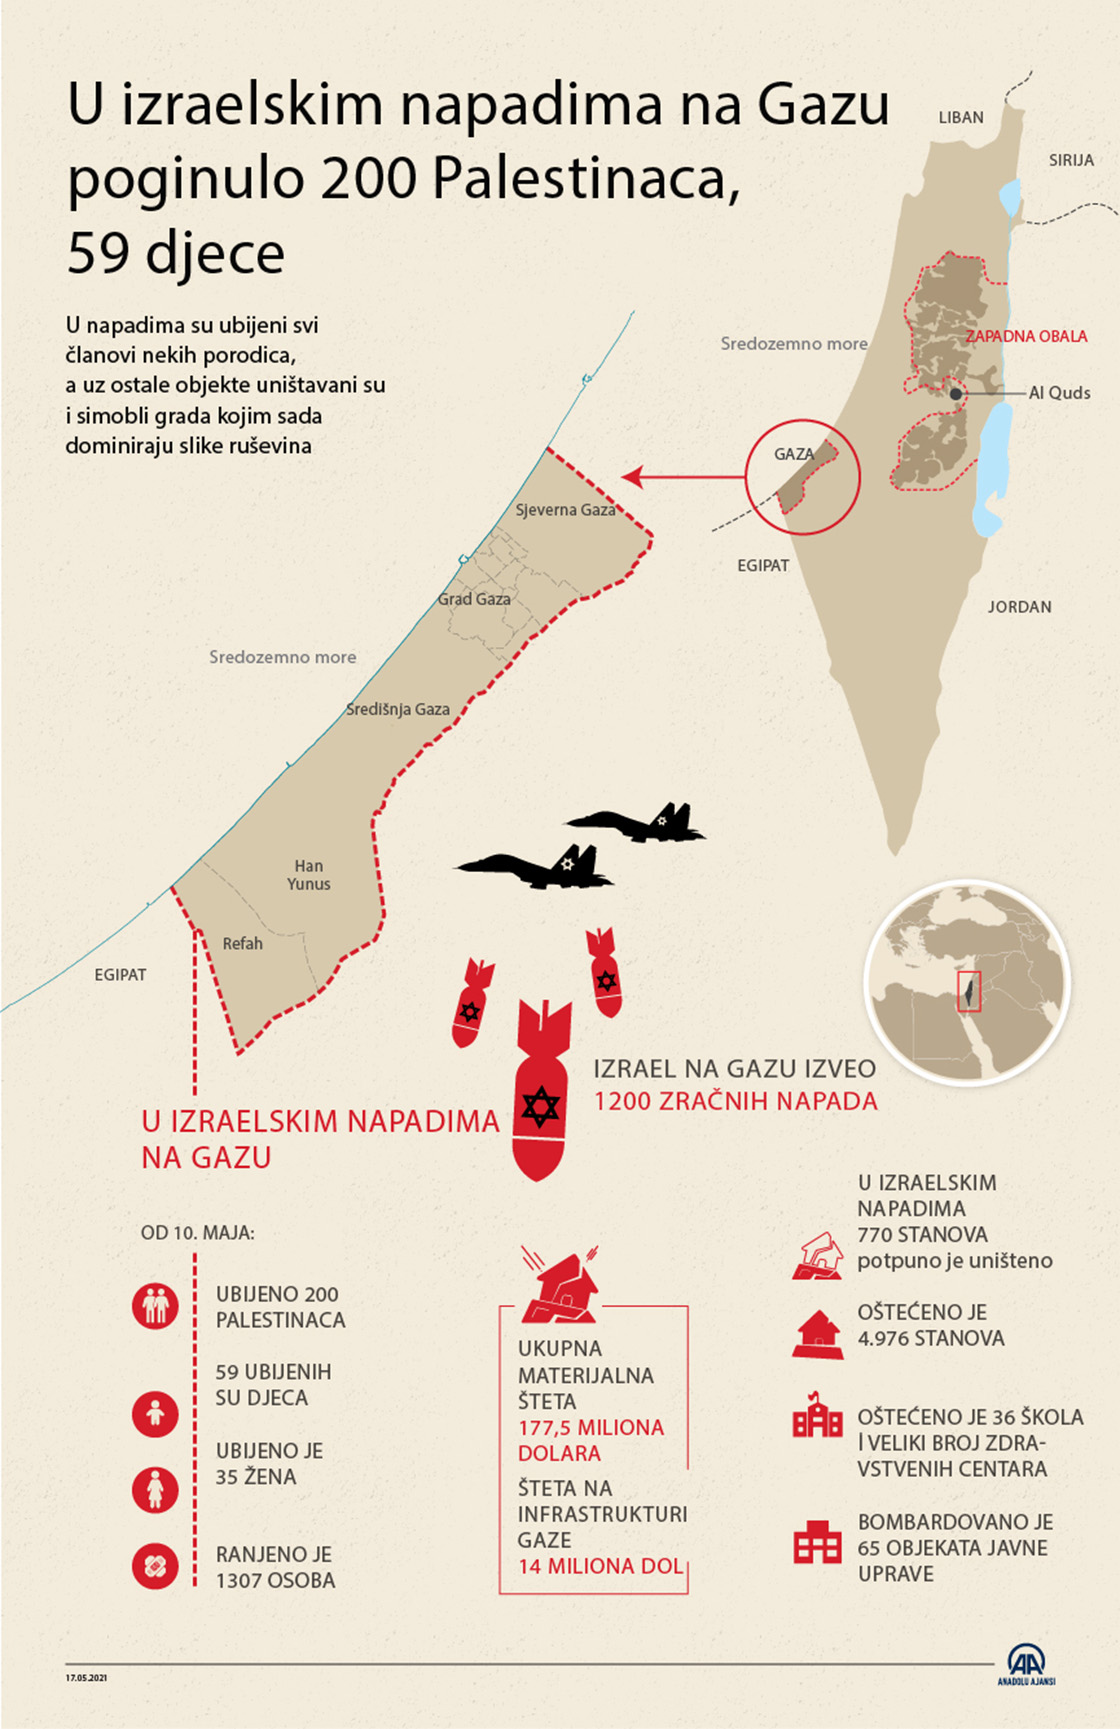 U izraelskim napadima na Gazu poginulo 200 Palestinaca, među kojima 59-ero djece